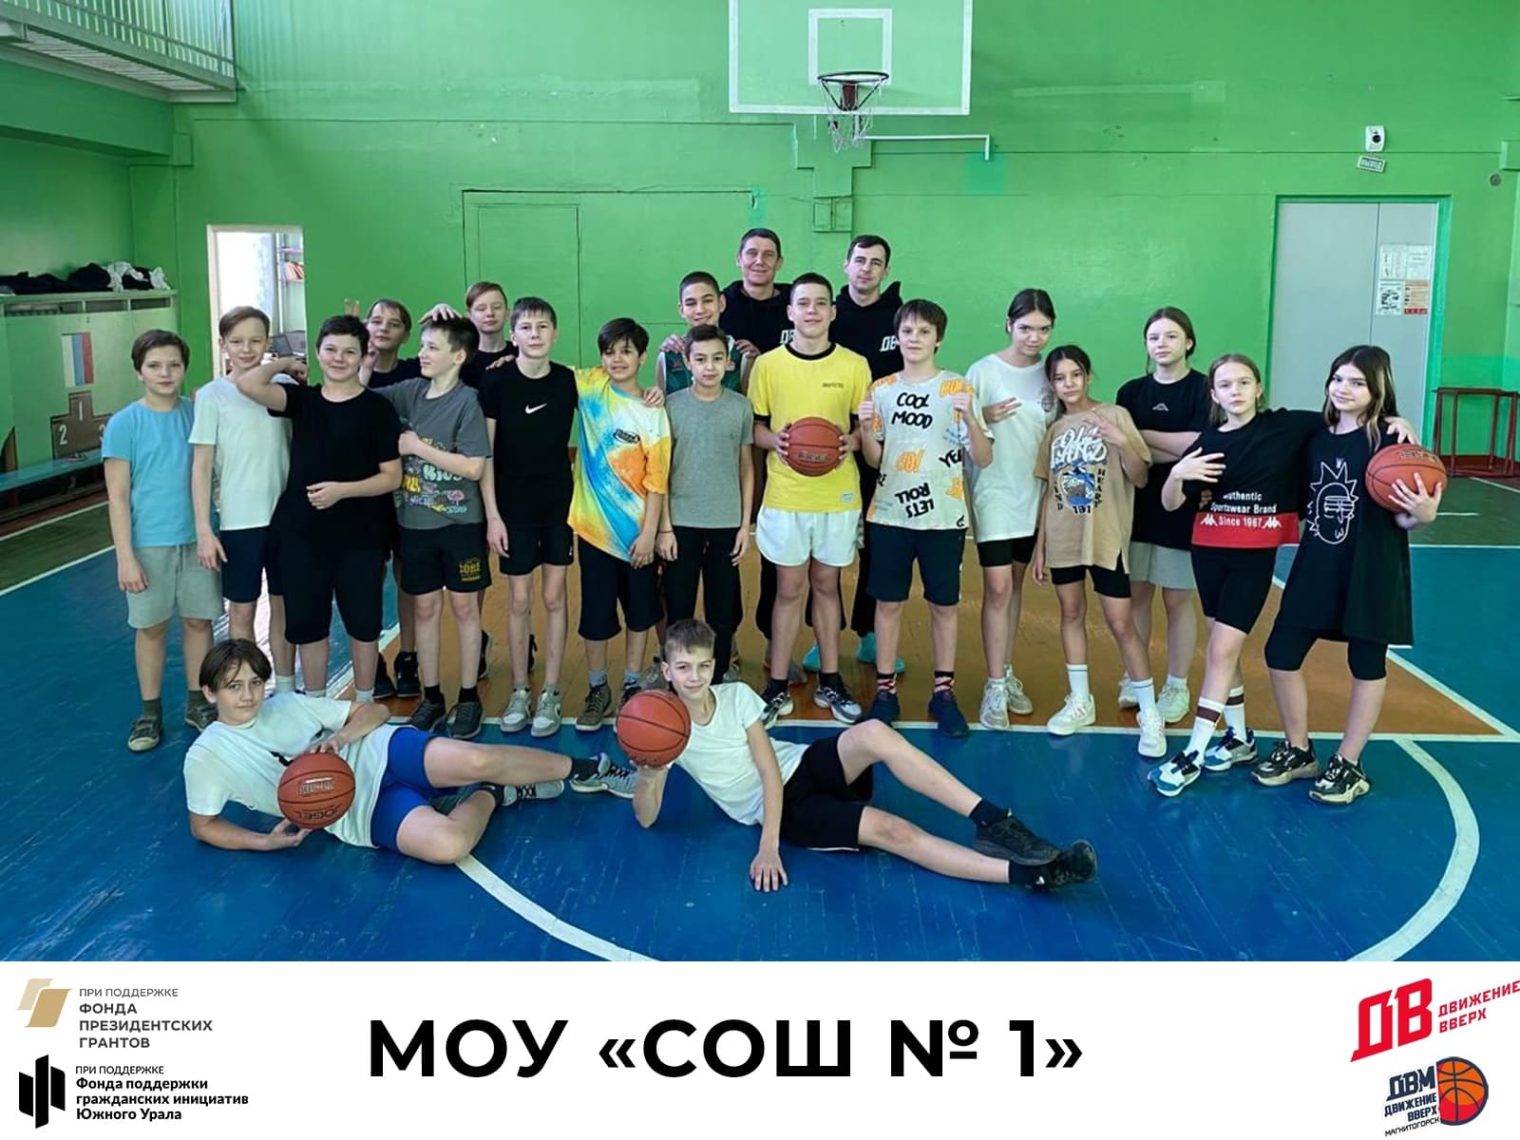 В Магнитогорских школах проводятся тренировки по баскетболу